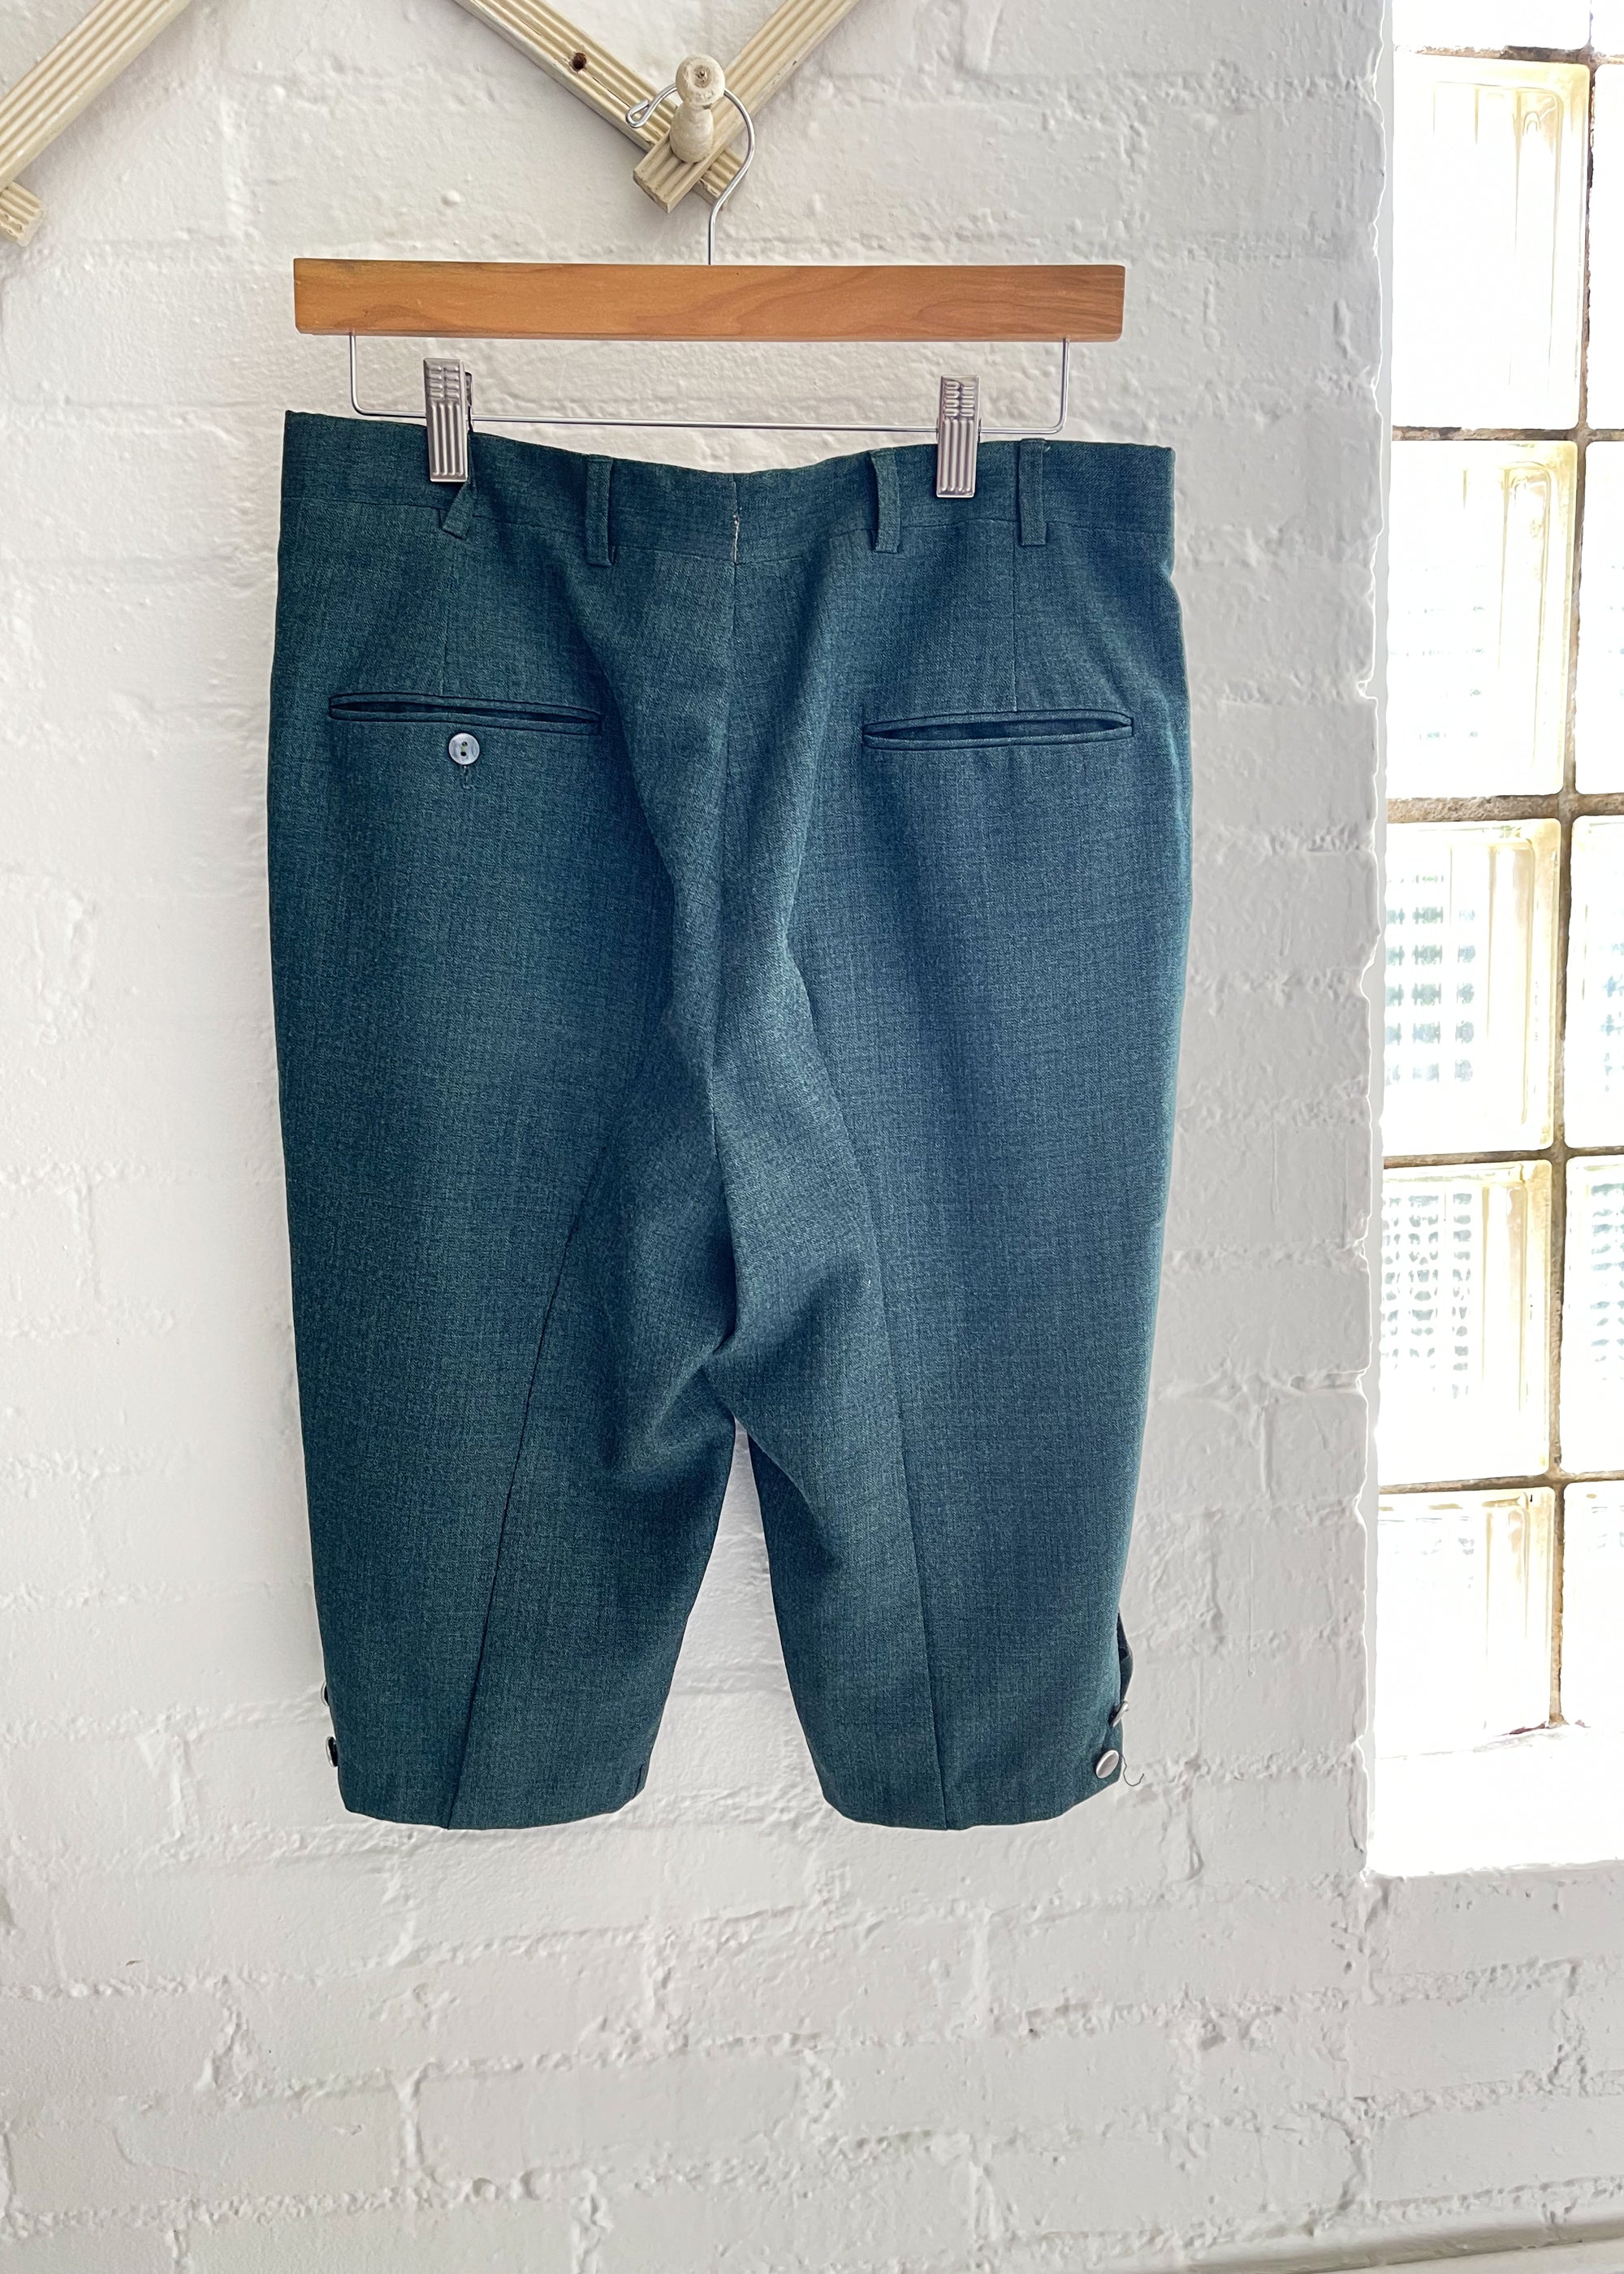 Reworked Vintage Menswear Capri Pants - Raleigh Vintage